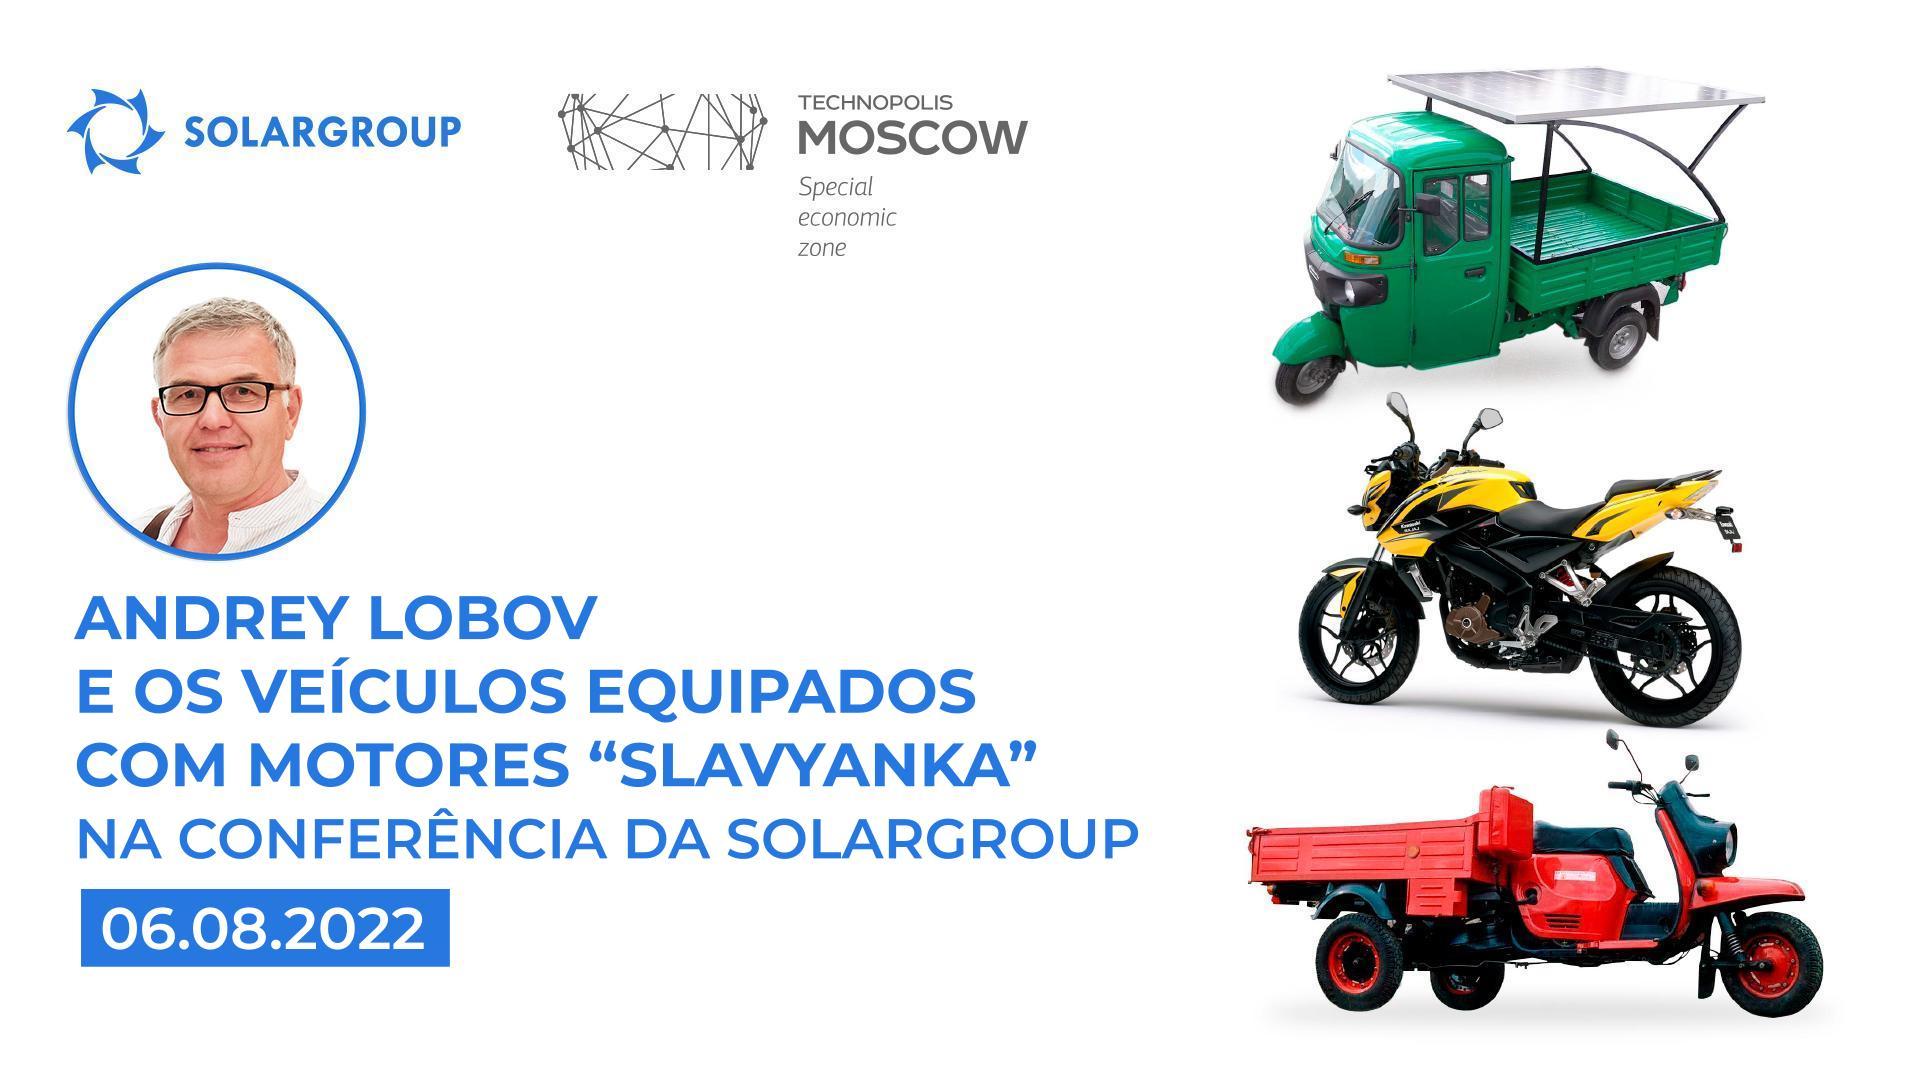 Andrey Lobov e a exibição de veículos equipados com motores de tecnologia "Slavyanka"